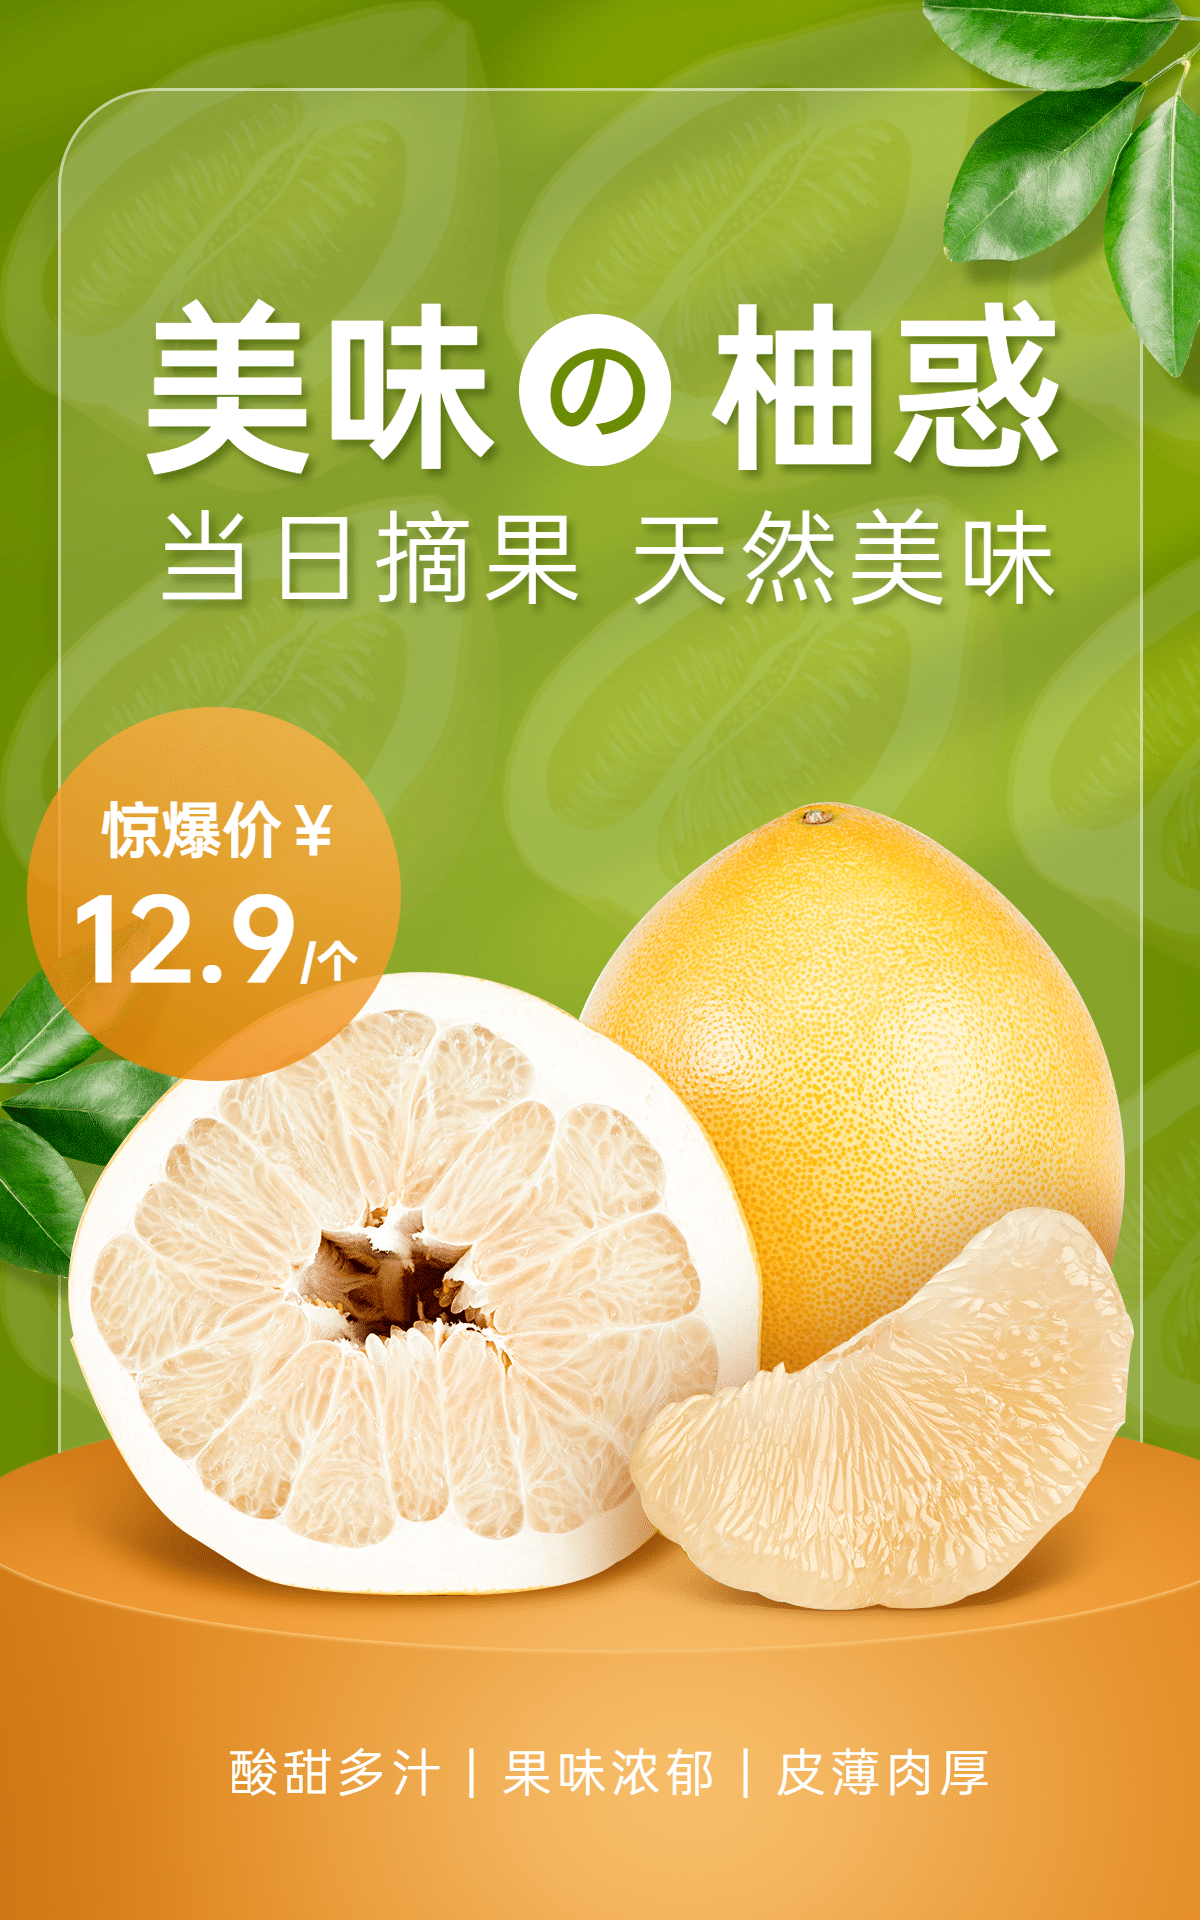 清新生鲜食品水果柚子海报预览效果